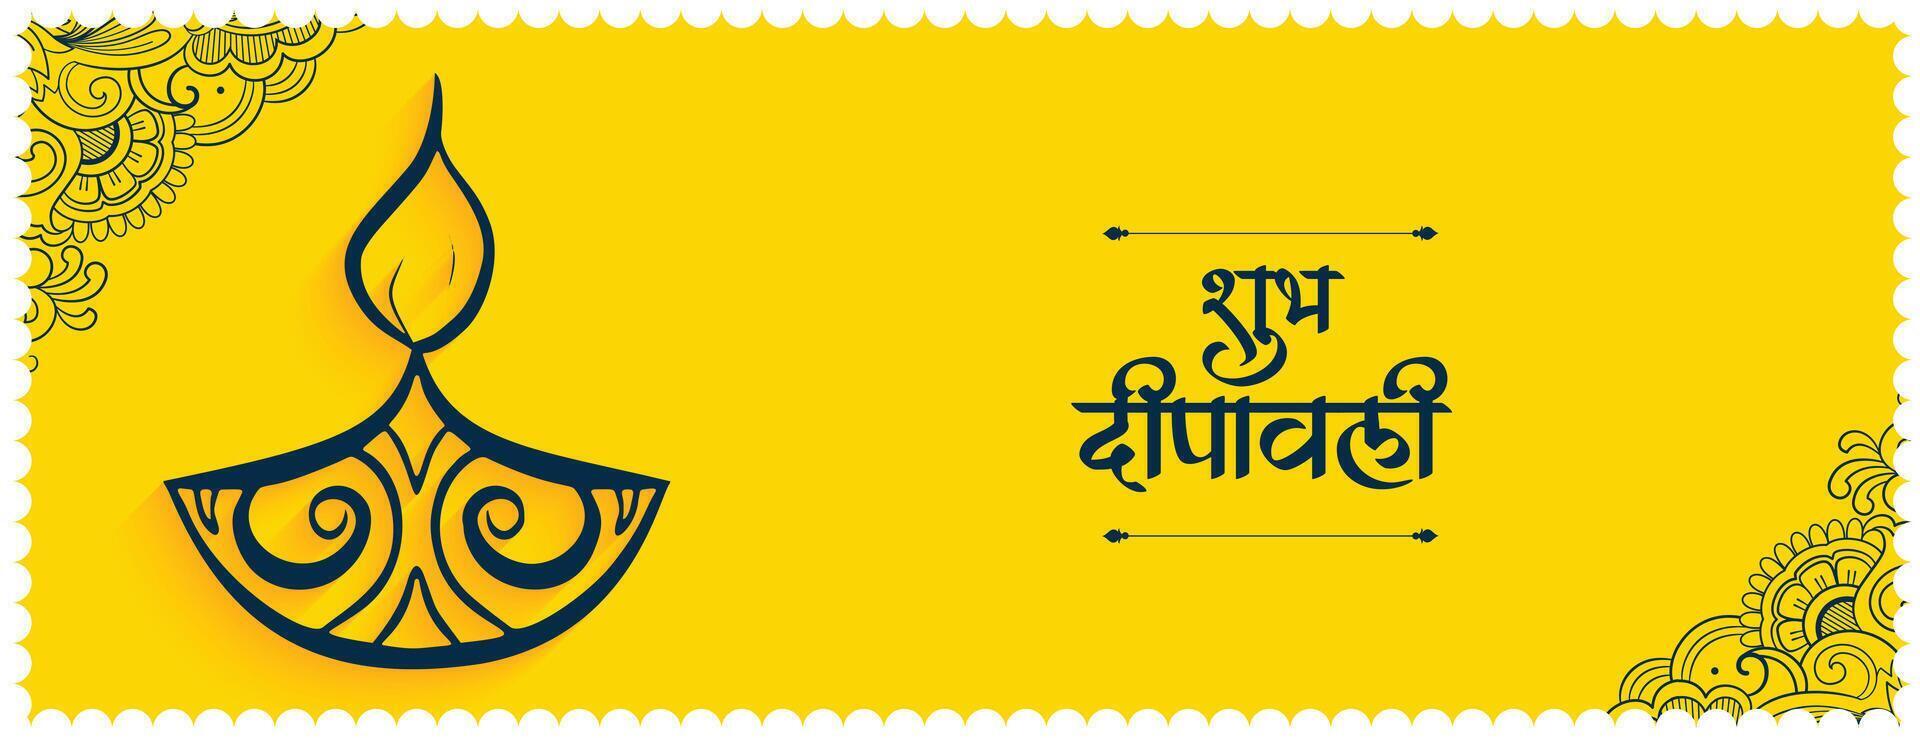 shubh deepavali geel banier met etnisch diya ontwerp vector